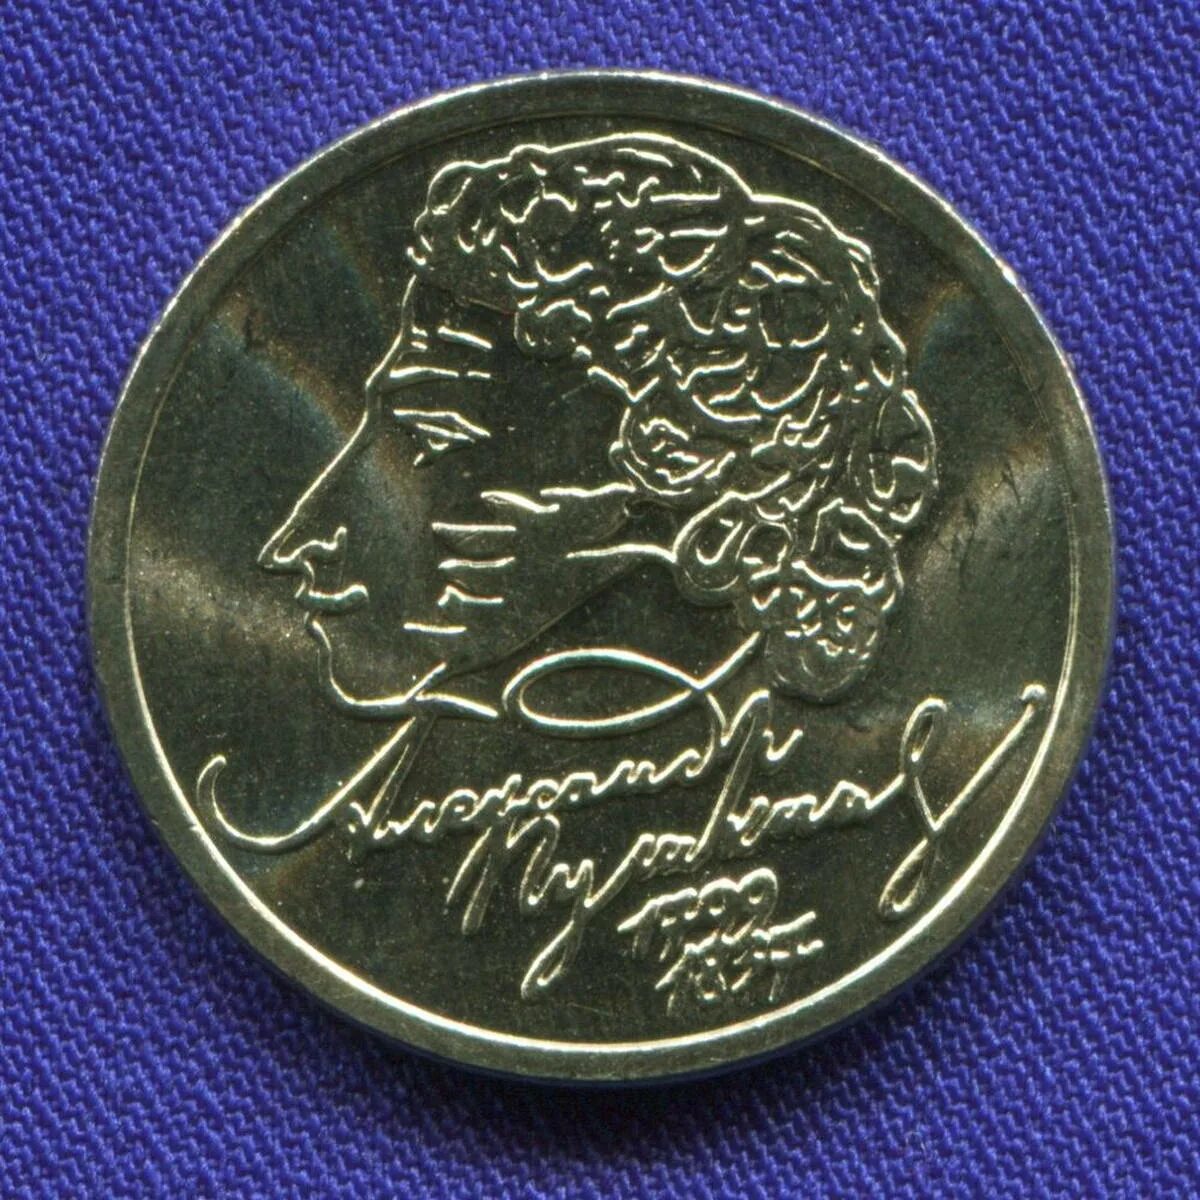 1 Рубль Пушкин 1999. Монета с Пушкиным 1999.